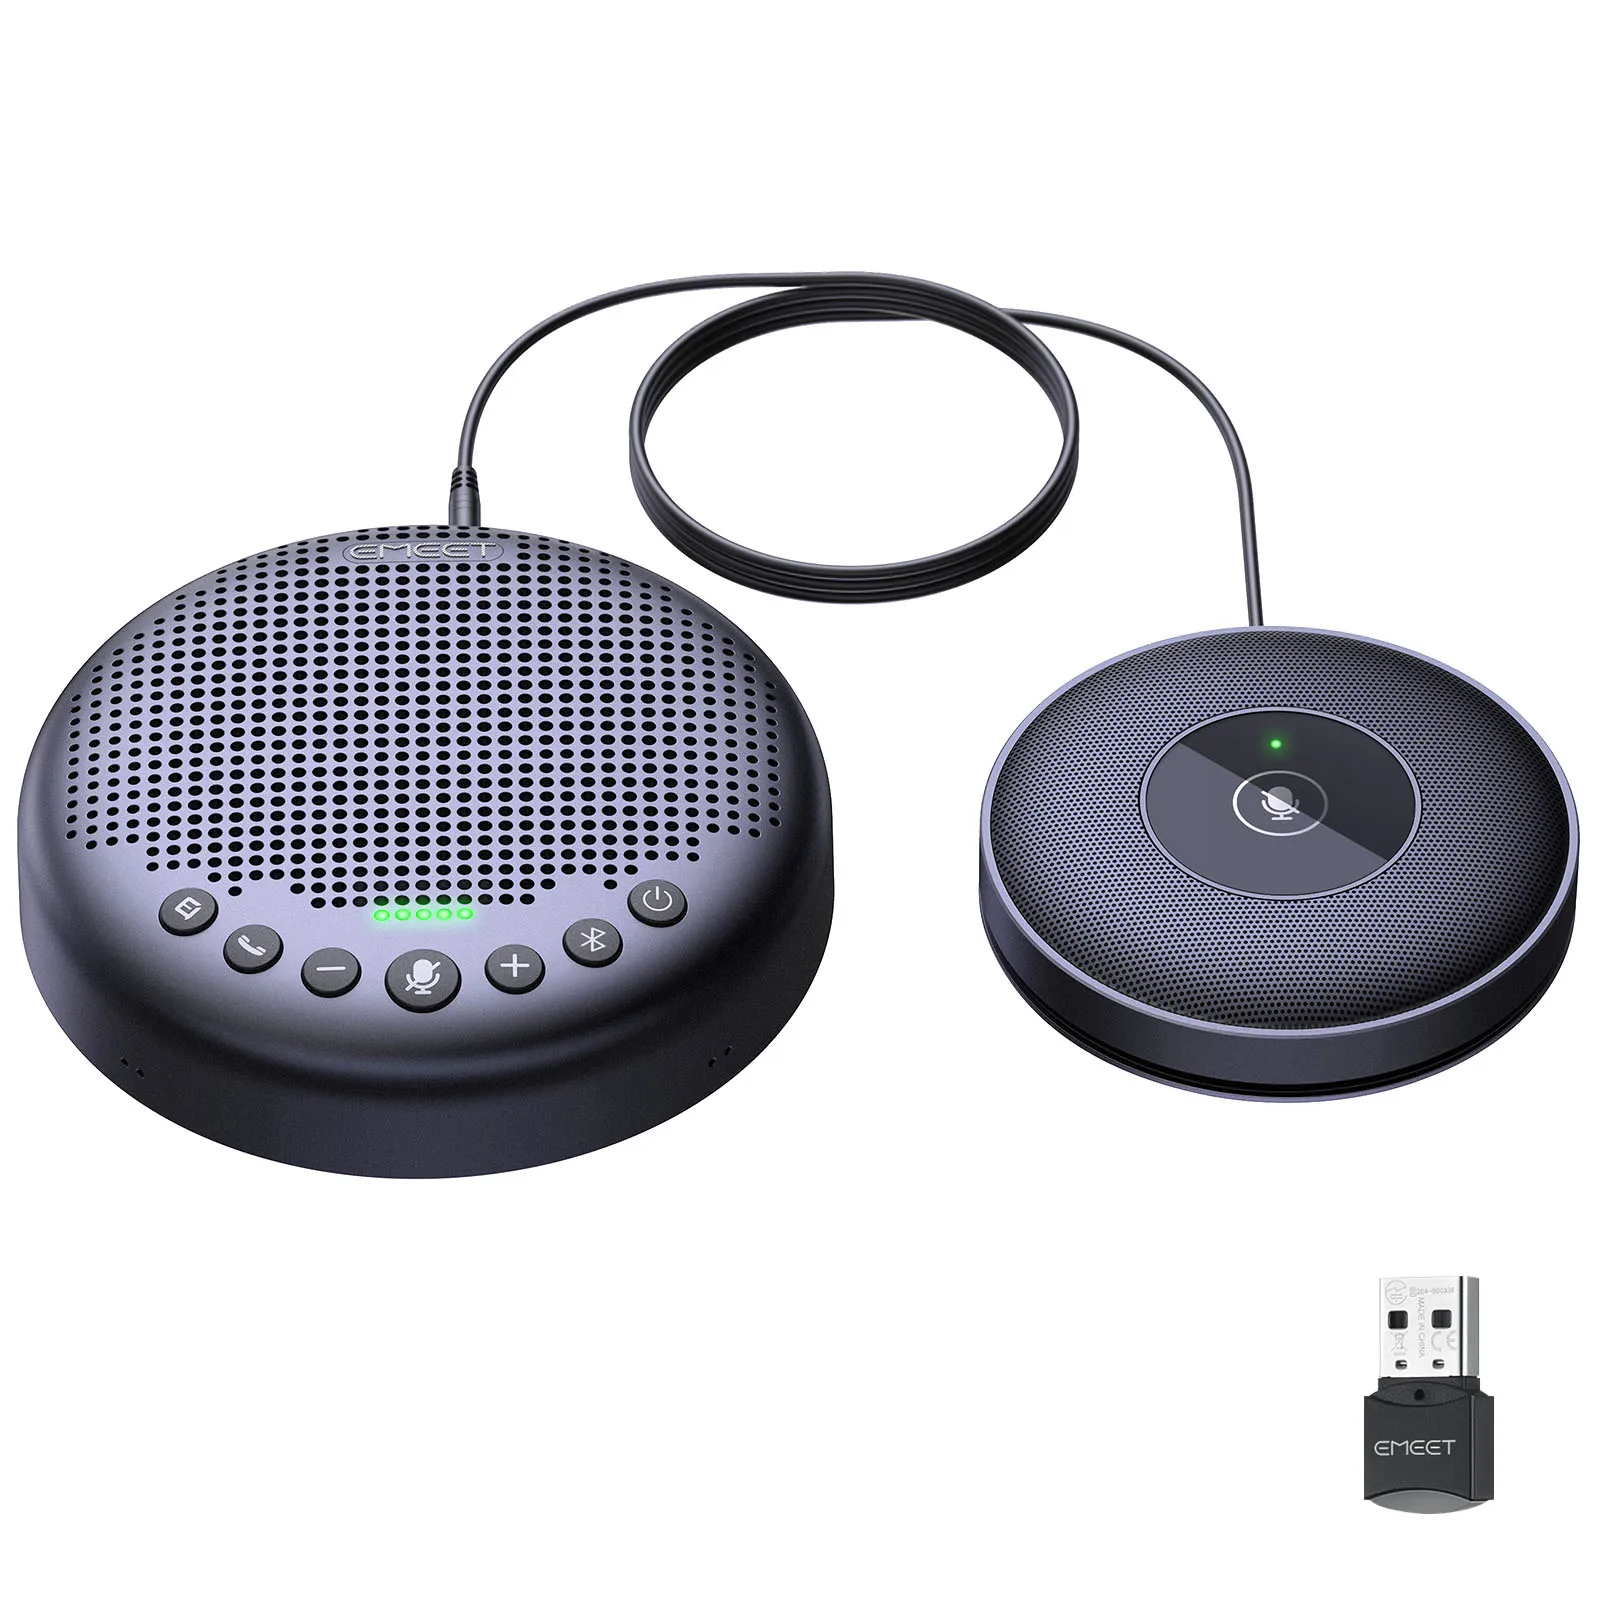 Bluetooth динамик для конференц-связи USB динамик EMEET Luna Plus комплект динамик телефон с 8 микрофонами 360 ° голосовой Пикап для дома и офиса